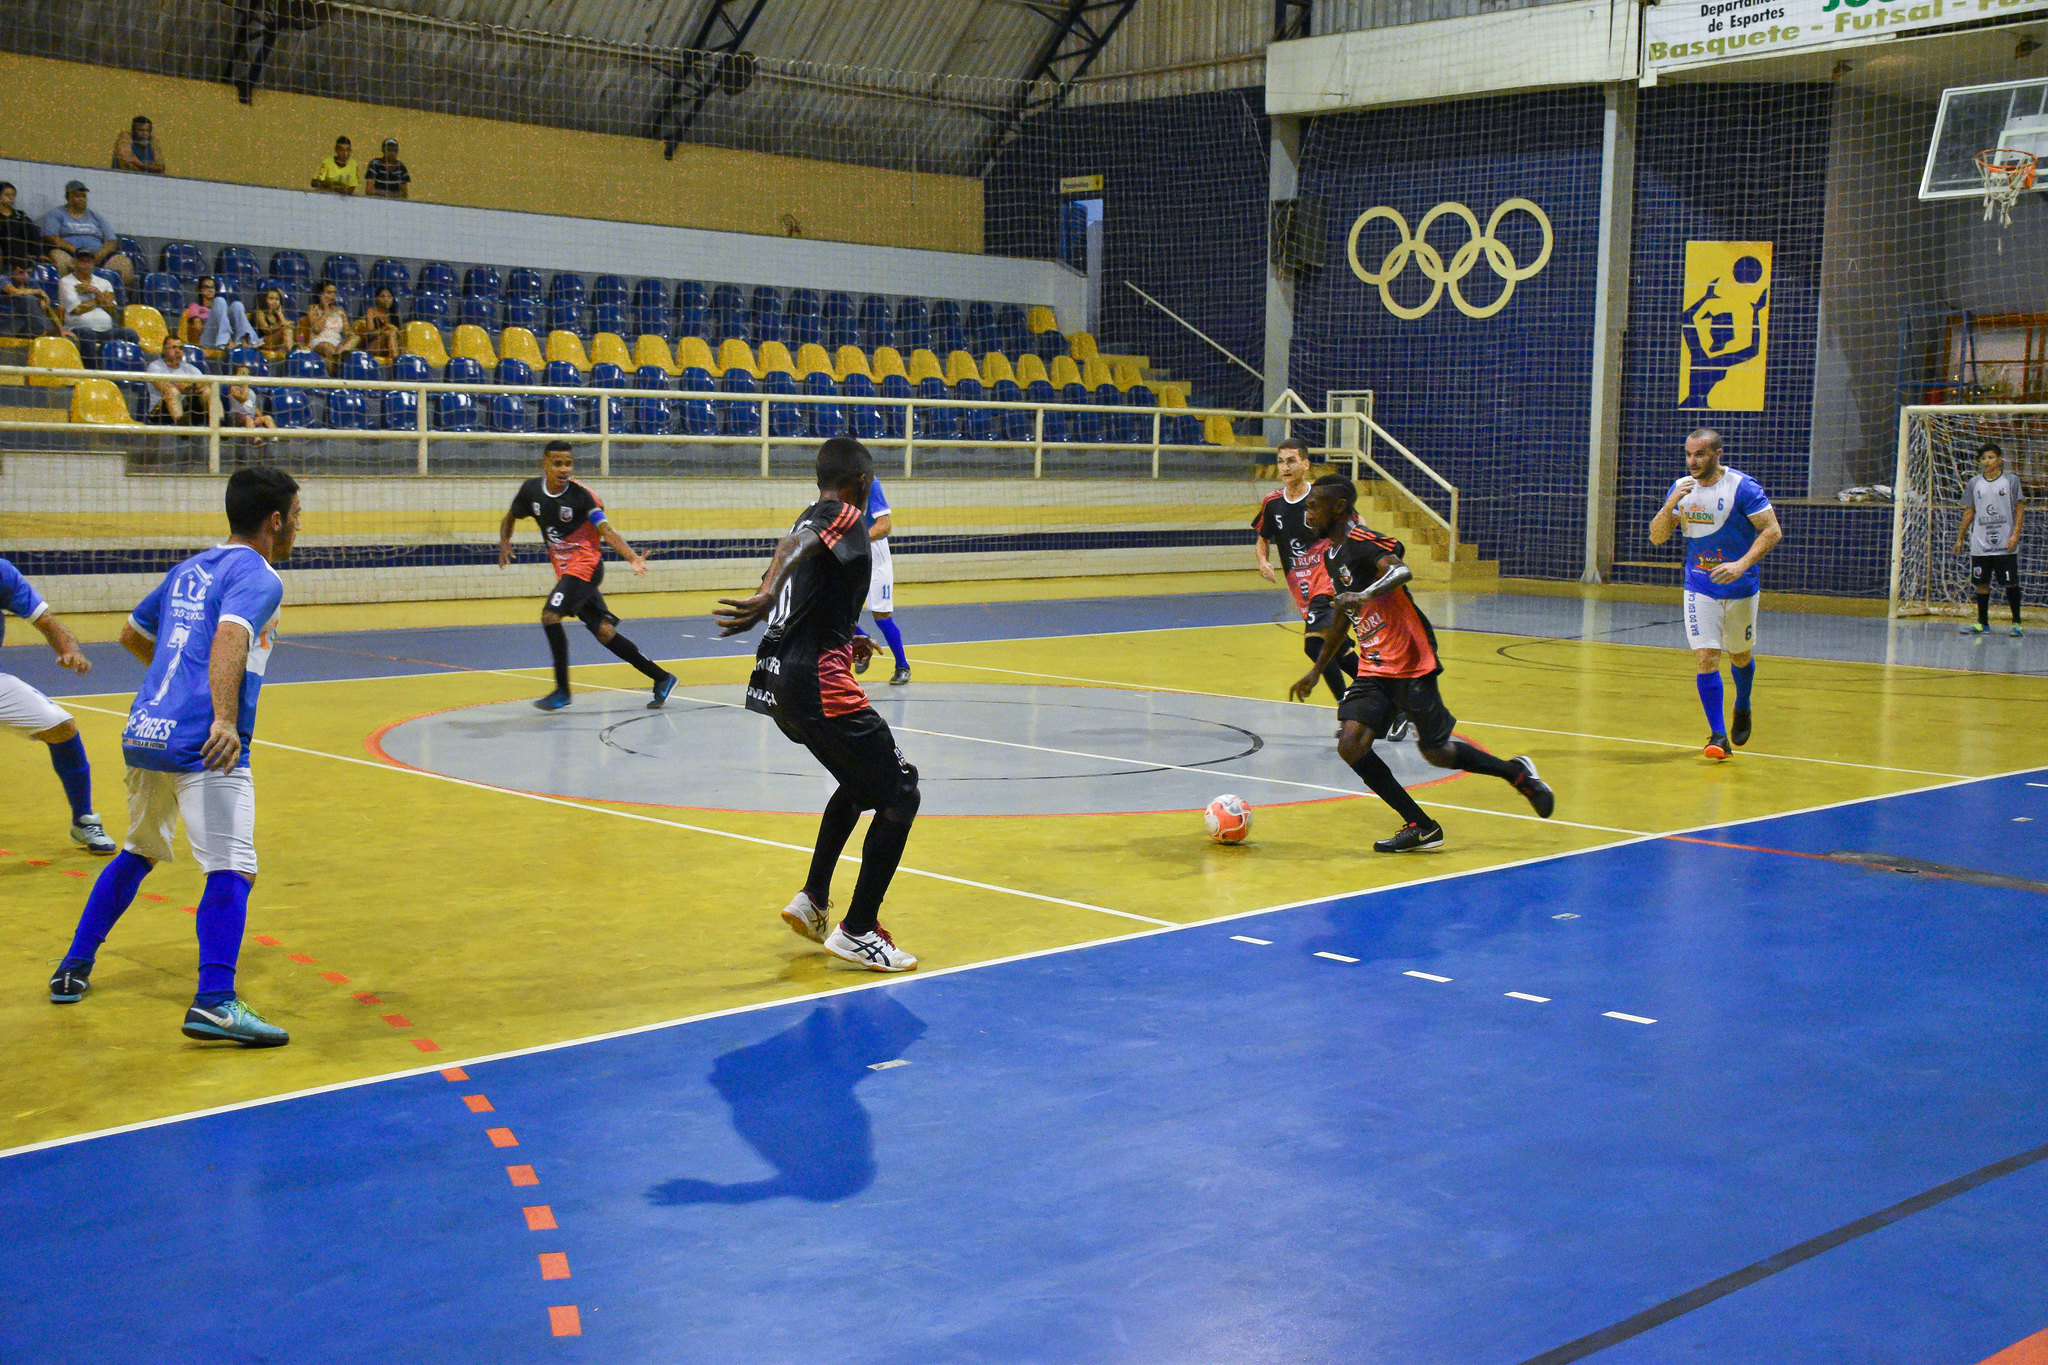 Jogo do Campeonato Municipal de Futsal 2019. Foto: Luís Fernando da Silva / Prefeitura de Urupês.